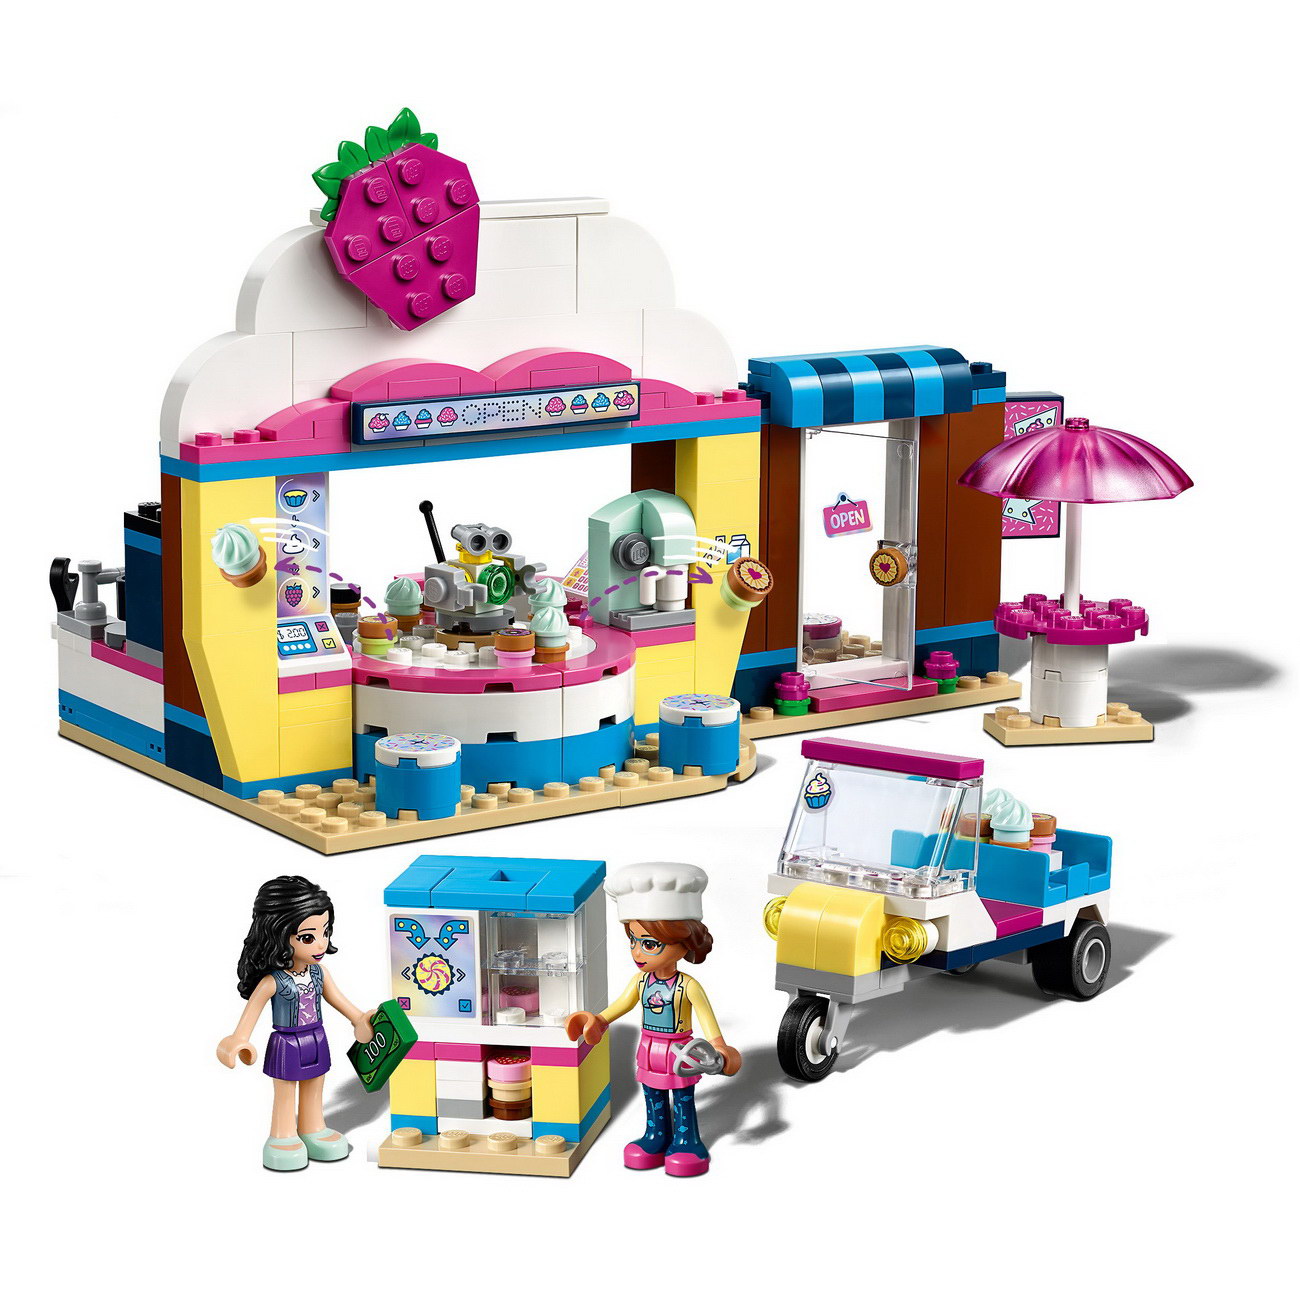 LEGO Friends 41366 - Olivias Cupcake-Café